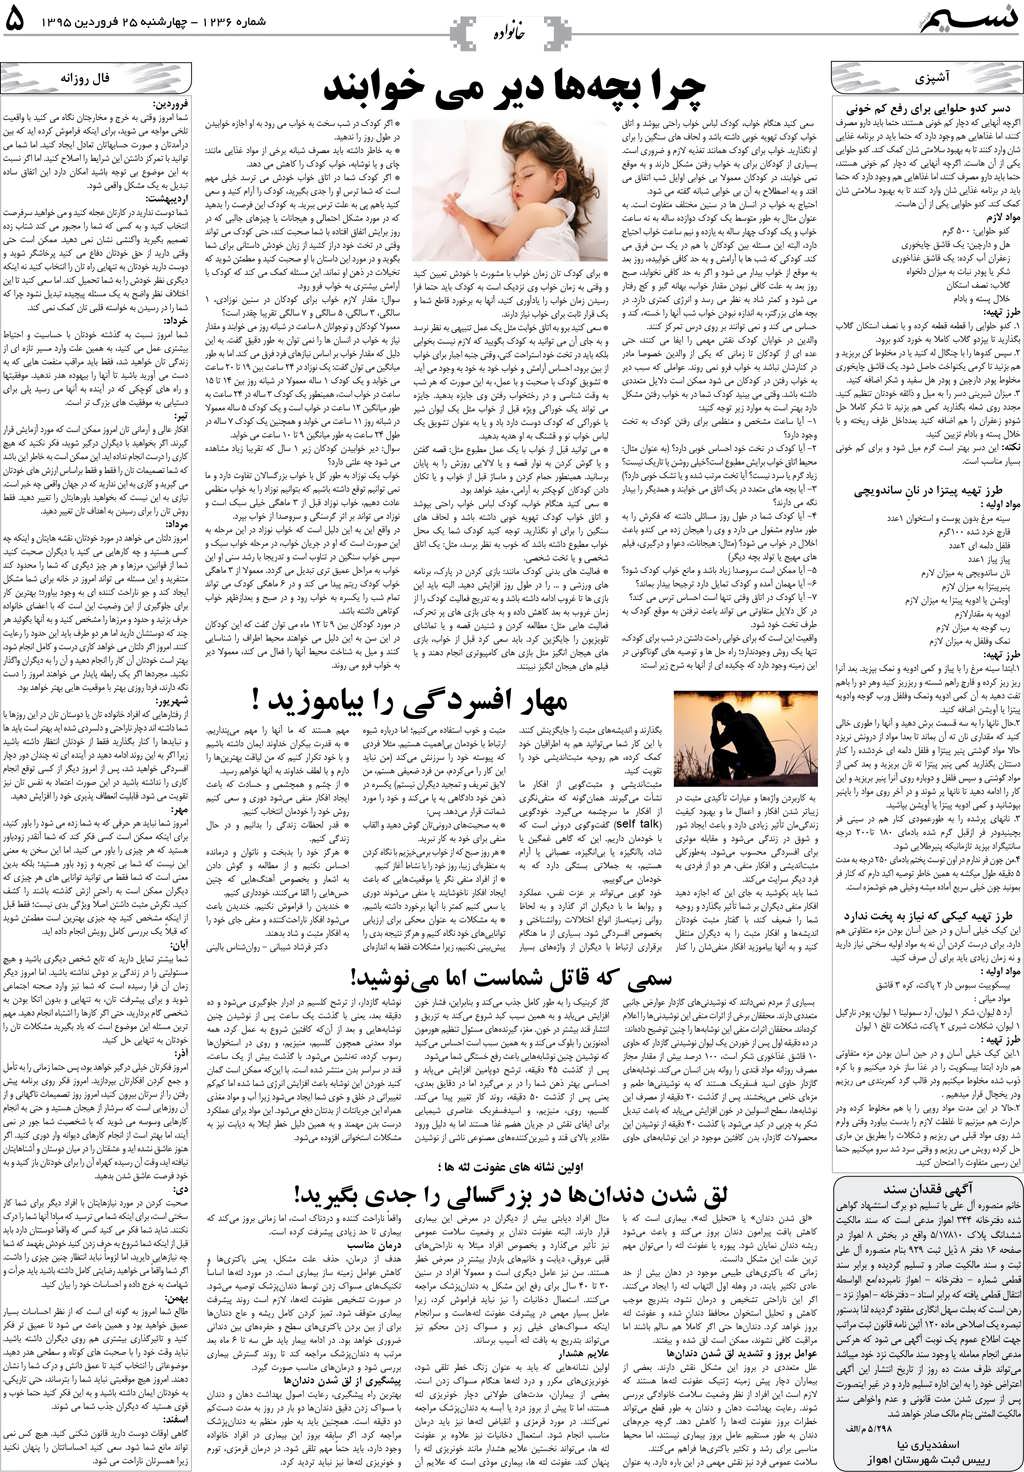 صفحه خانواده روزنامه نسیم شماره 1236